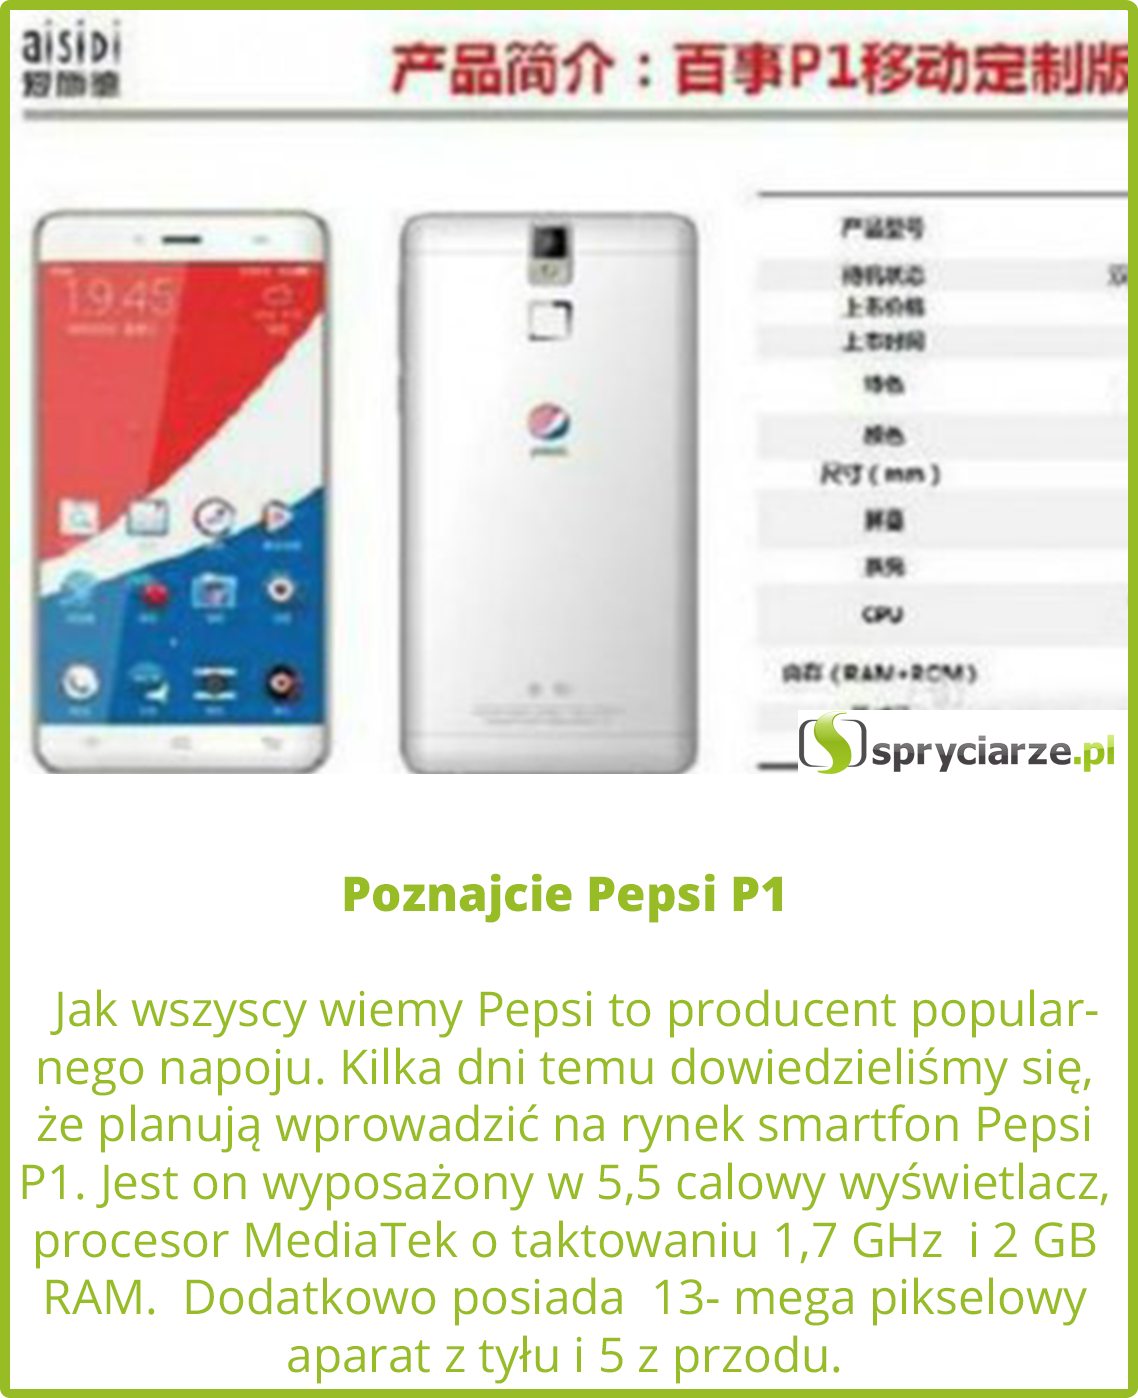 Poznajcie Pepsi P1